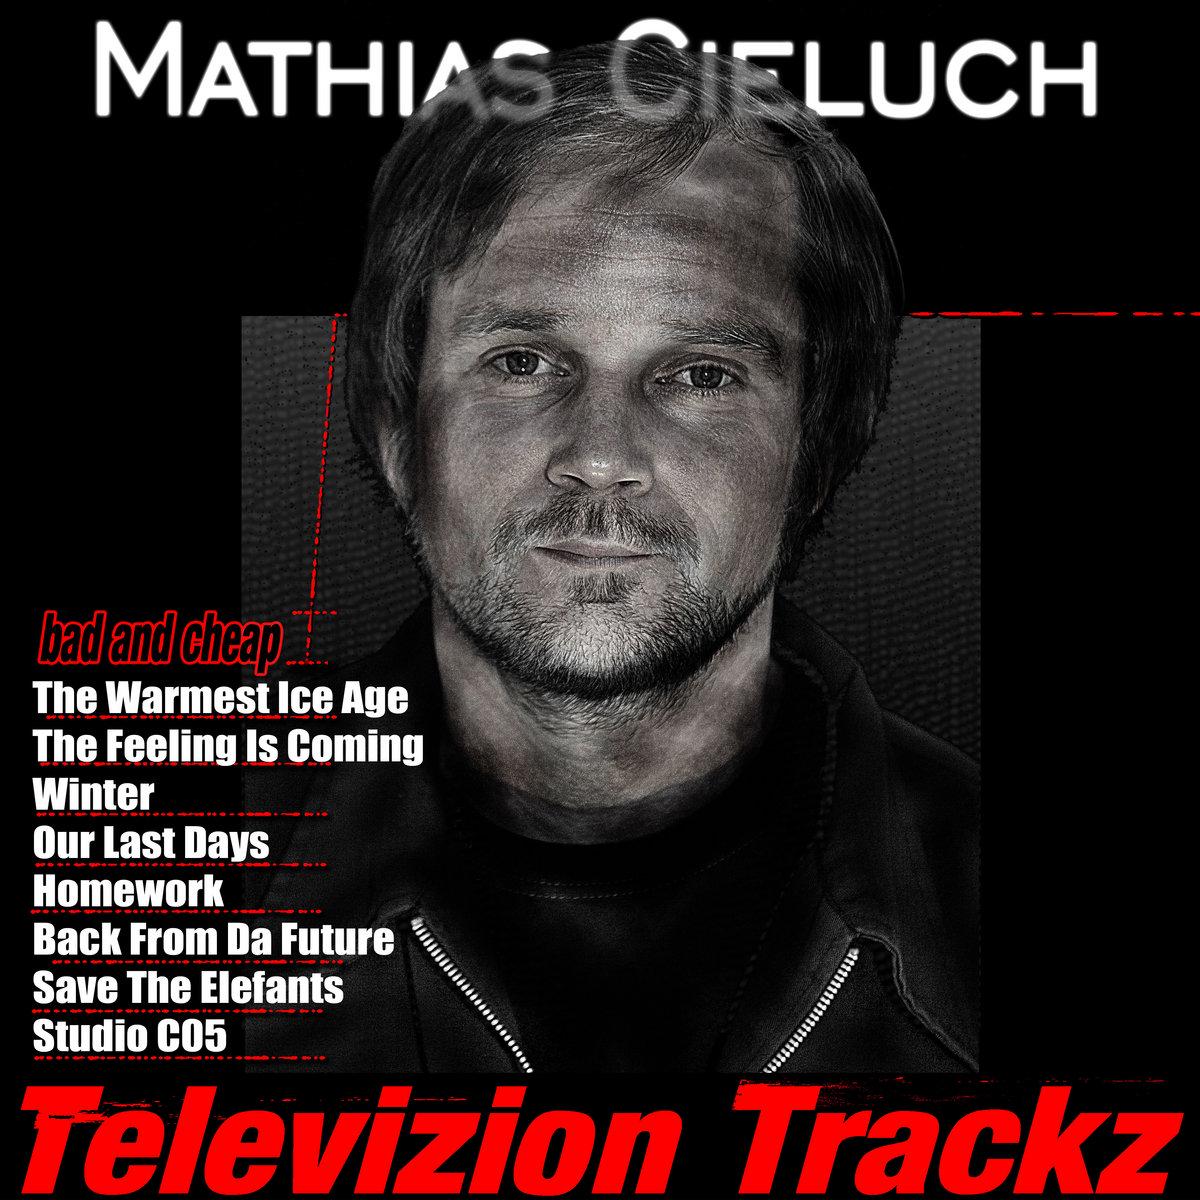 Mathias Cieluch